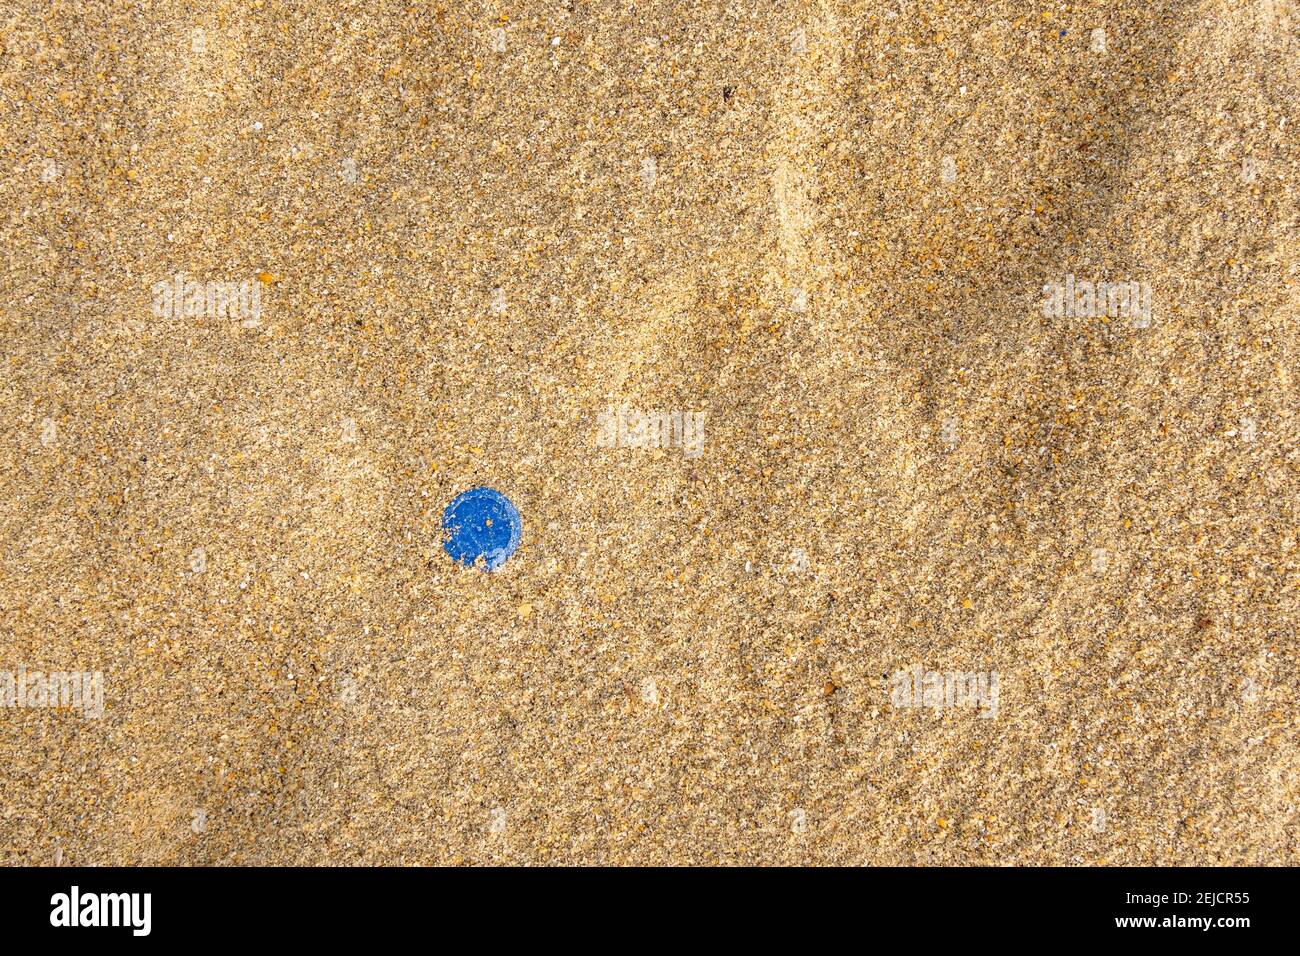 Bouchon de bouteille d'eau bleu dans le sable de plage, concept de pollution plastique Banque D'Images